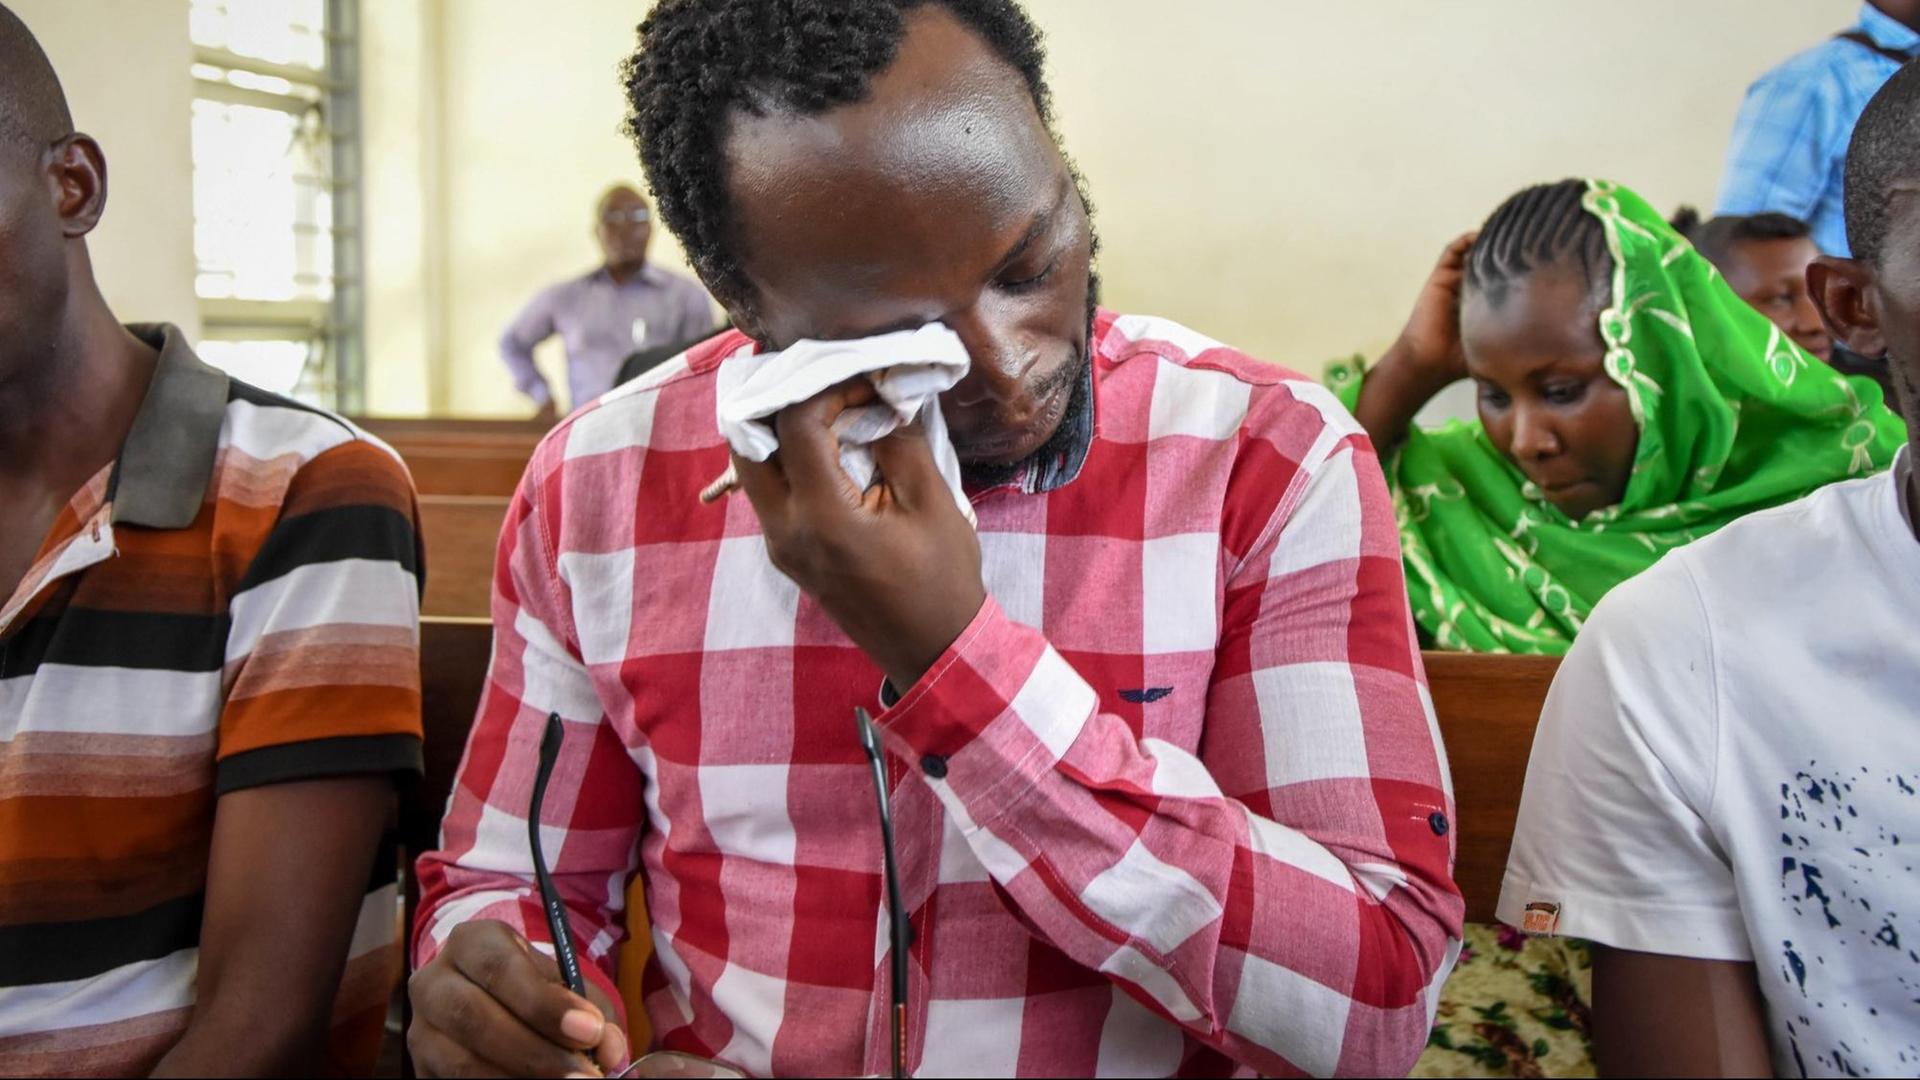 Dem Journalisten Erick Kabendera wird Steuerhinterziehung vorgeworfen, er sitzt deshalb seit zwei Jahren in Haft, obwohl keine Beweise vorliegen. Auch an der Beerdigung seiner Mutter darf er nicht teilnehmen, er weint deshalb.